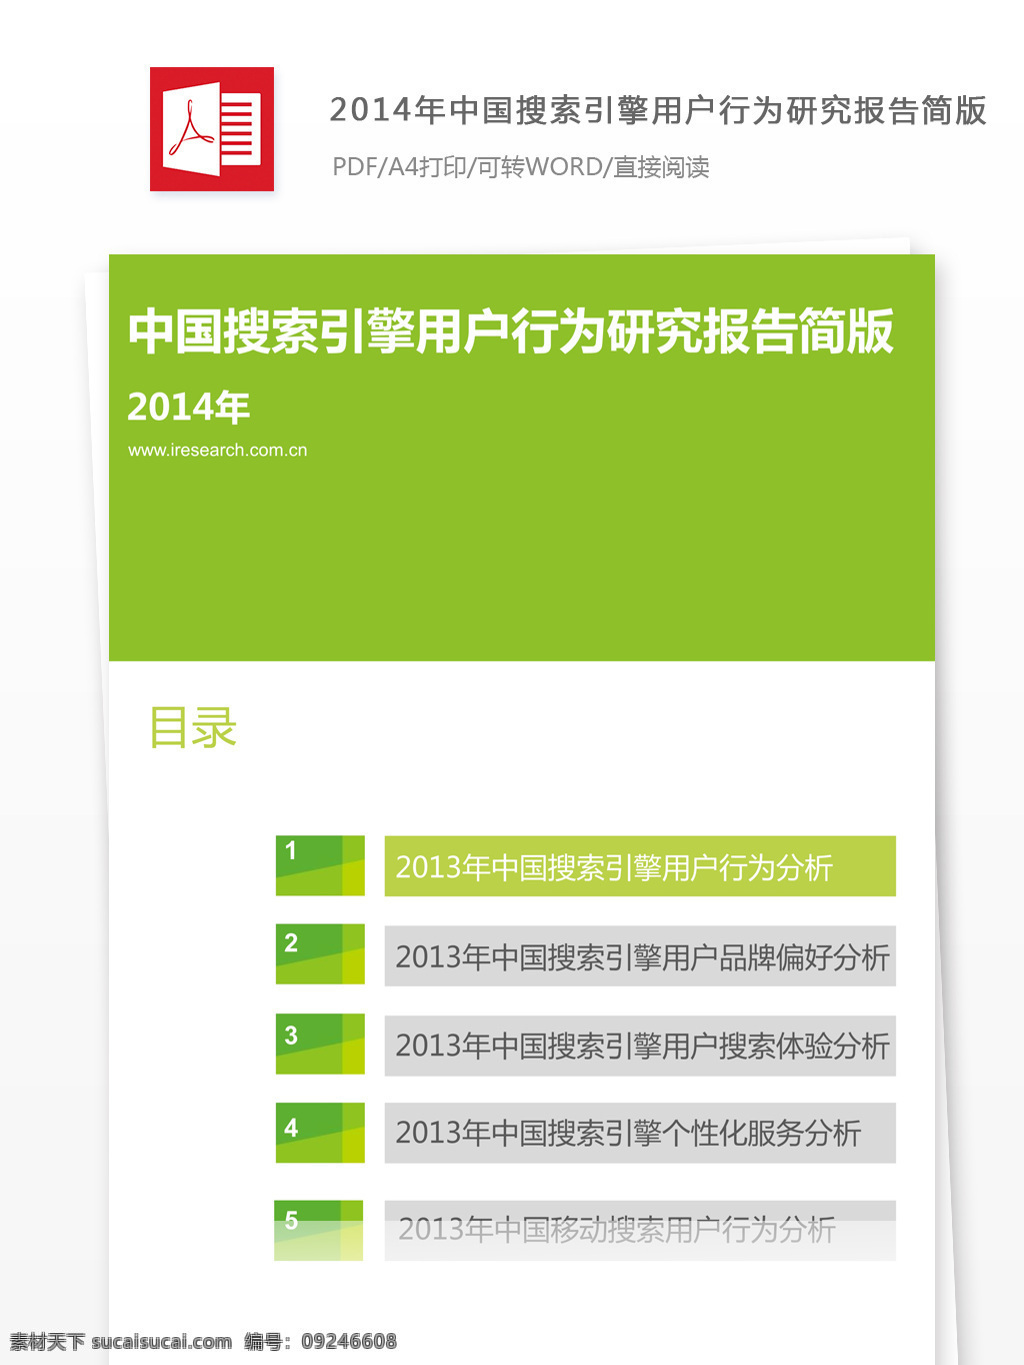 2014 年 中国 搜索引擎 用户 行为 研究报告 搜索引擎用户 搜索 引擎 用户行为